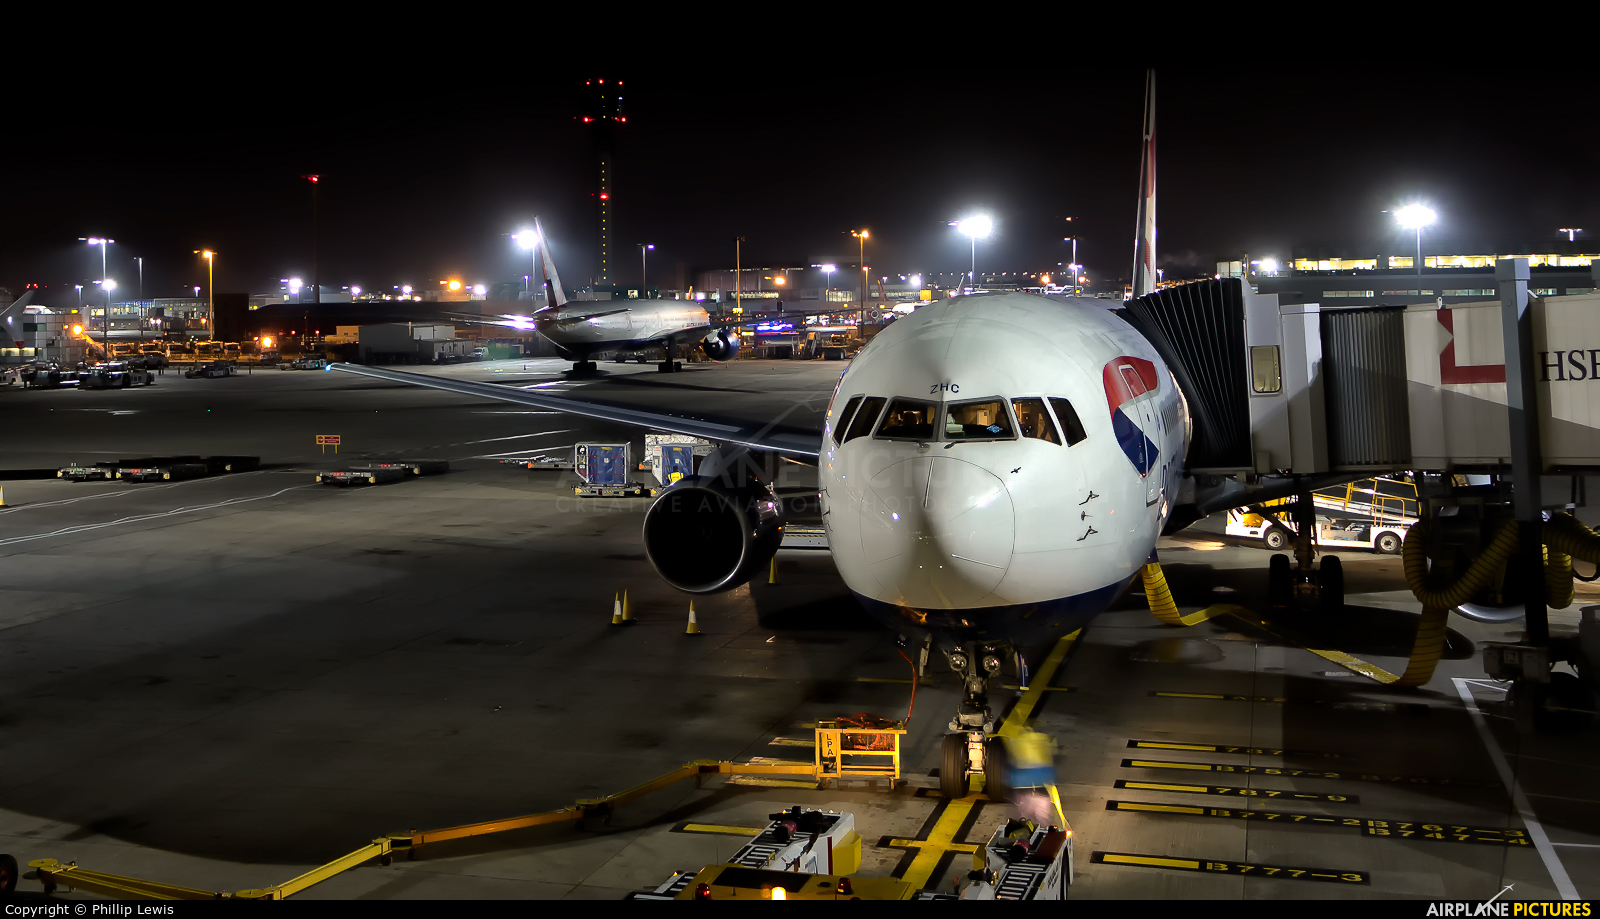 British Airways G-BZHC aircraft at London - Heathrow